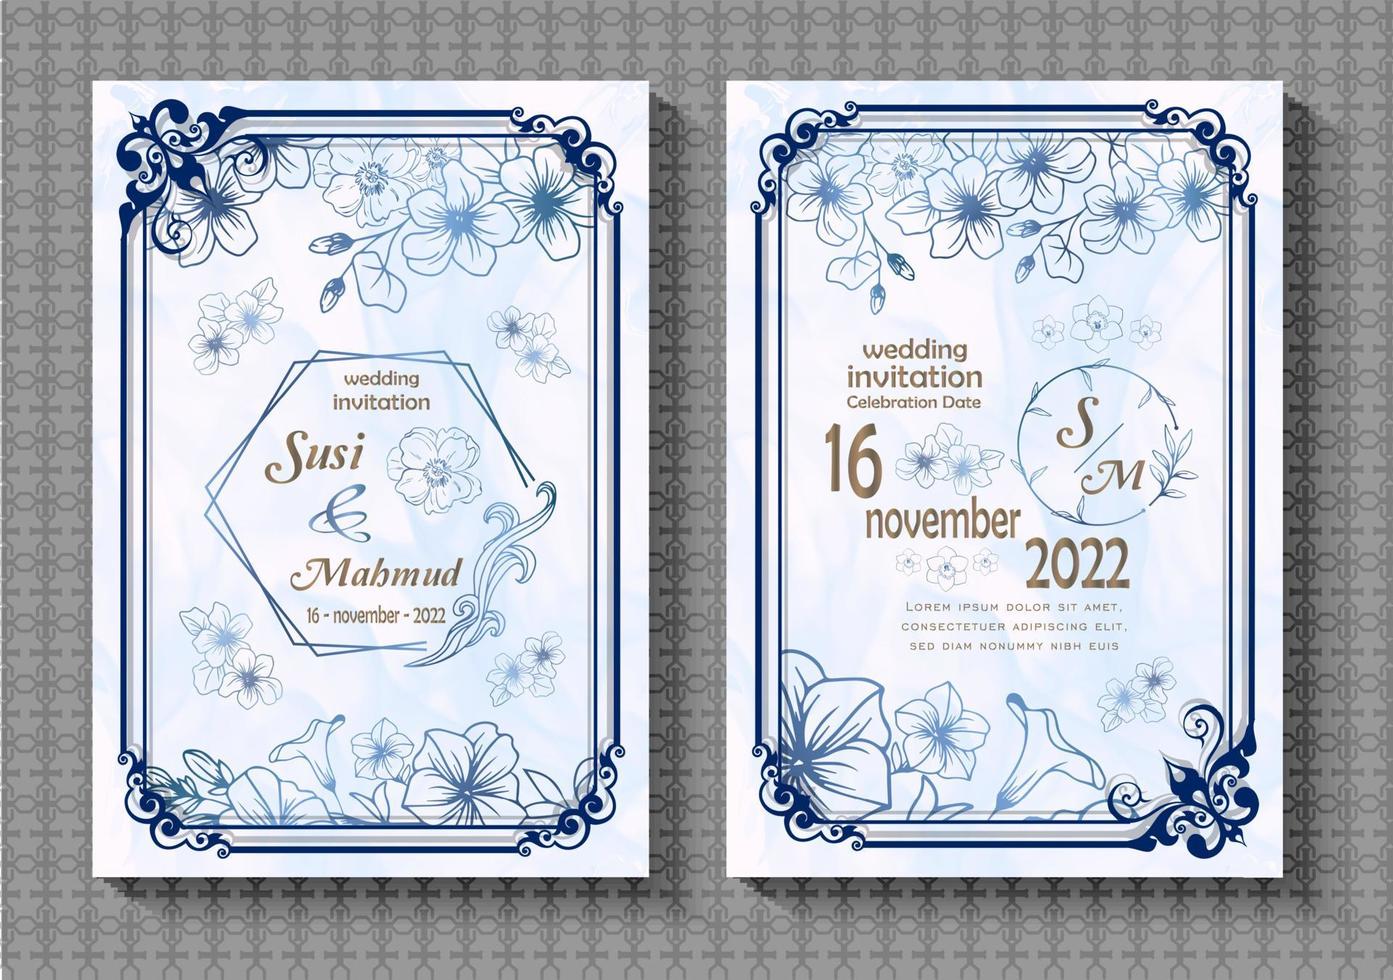 ensemble d'images vectorielles de modèles de cartes d'invitation de mariage, dessins de cadre de bordure et décorations de contour floral, feuilles, isolés sur un fond blanc décoré d'aquarelle vecteur